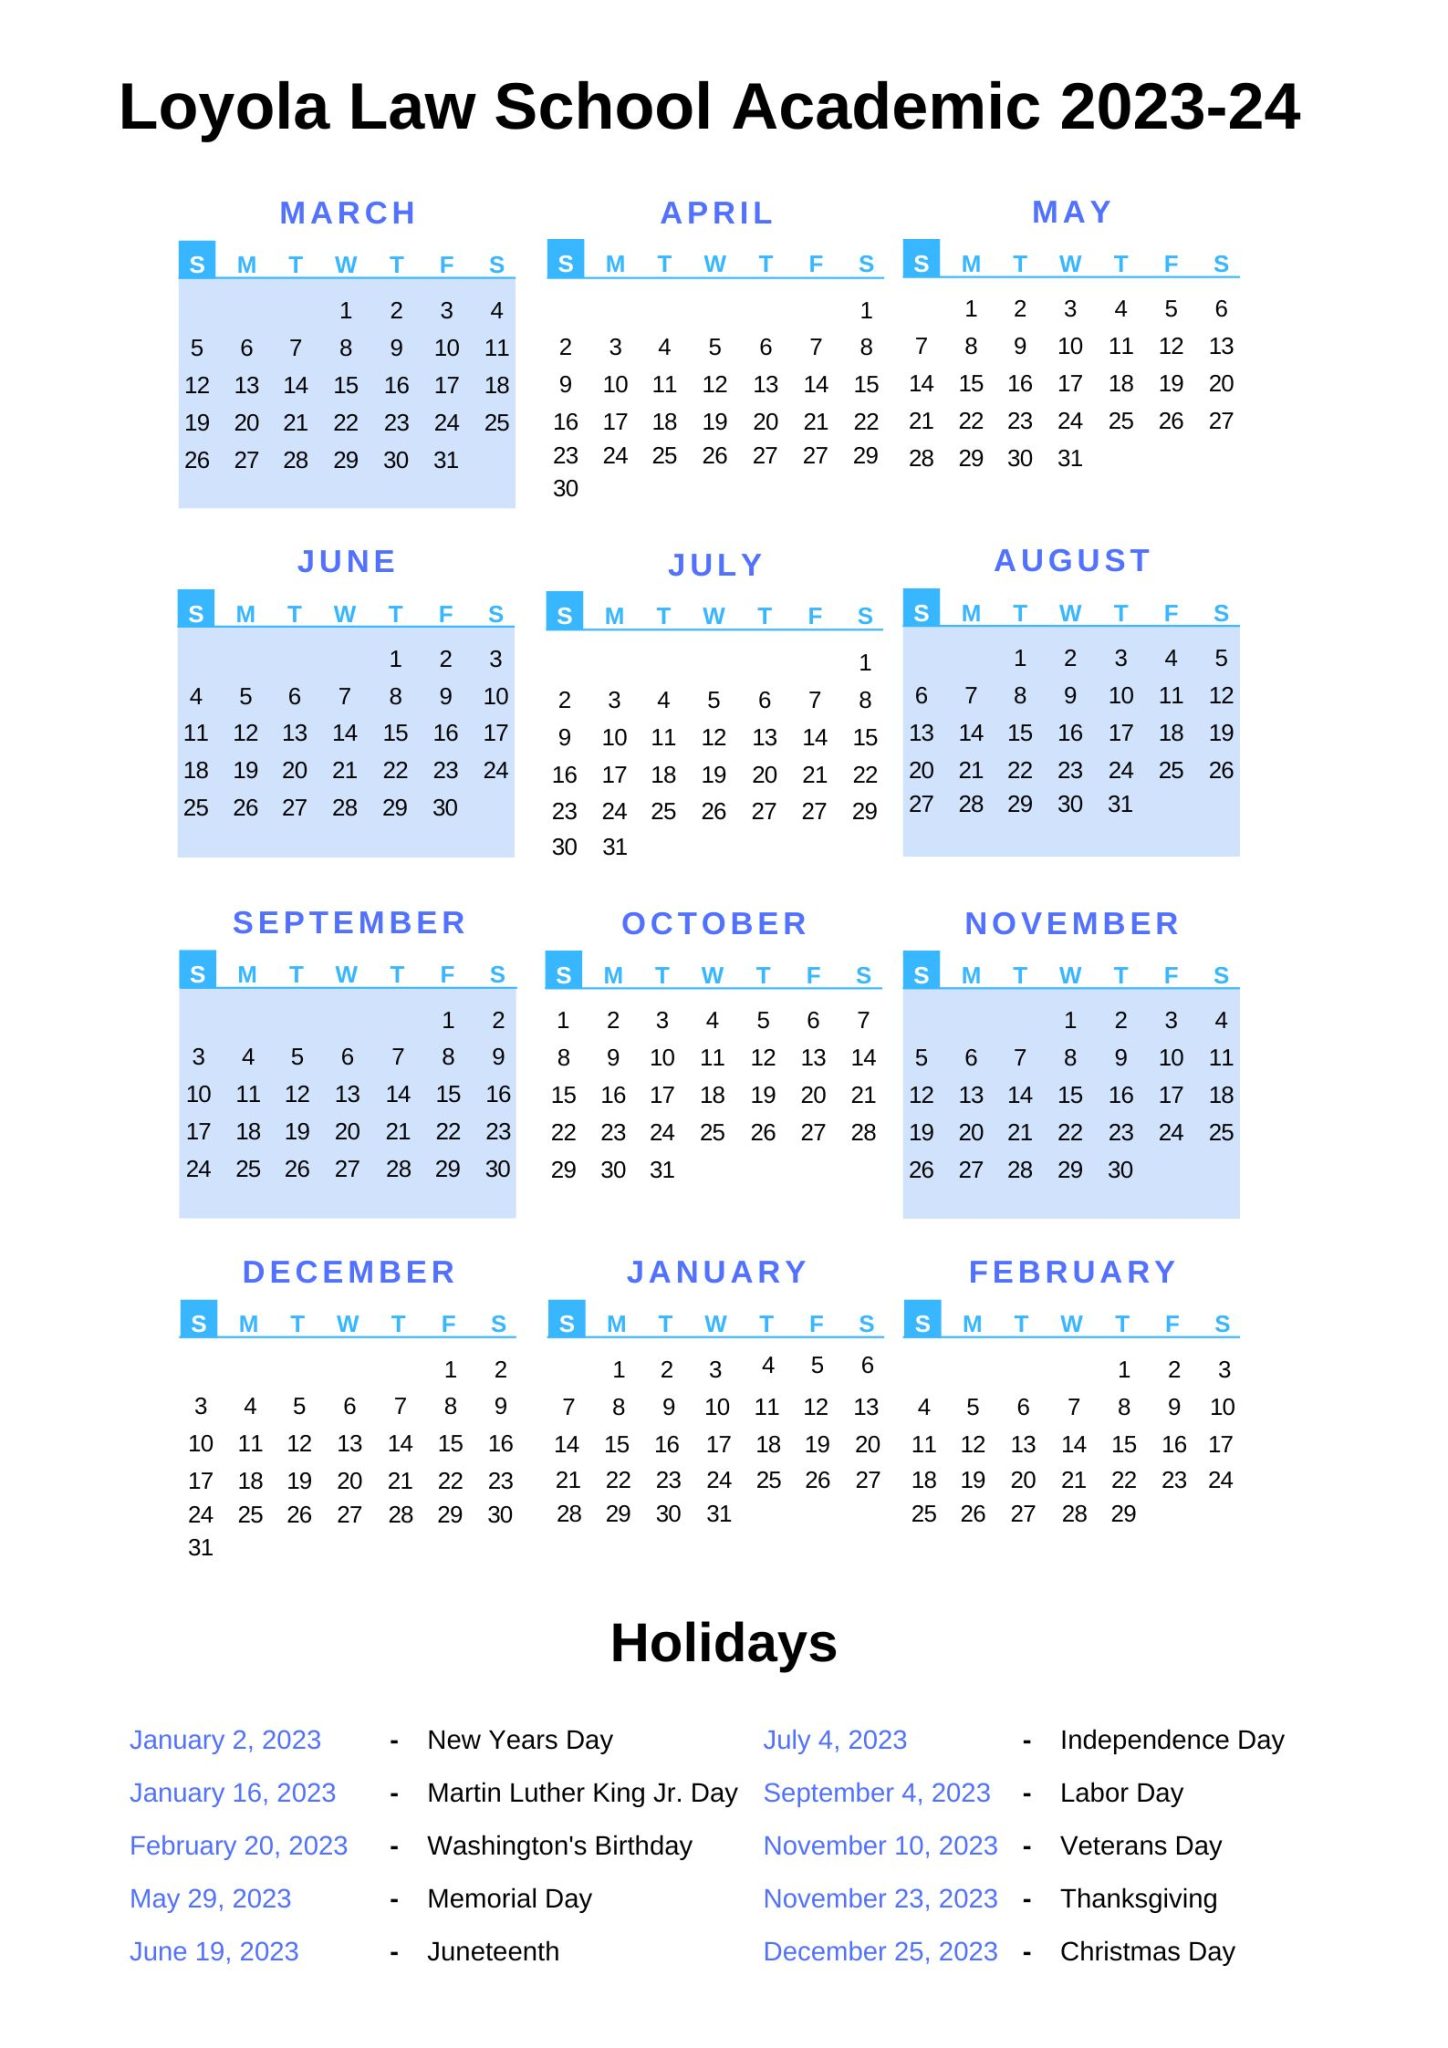 Loyola Law School Academic Calendar 202324 With Holidays